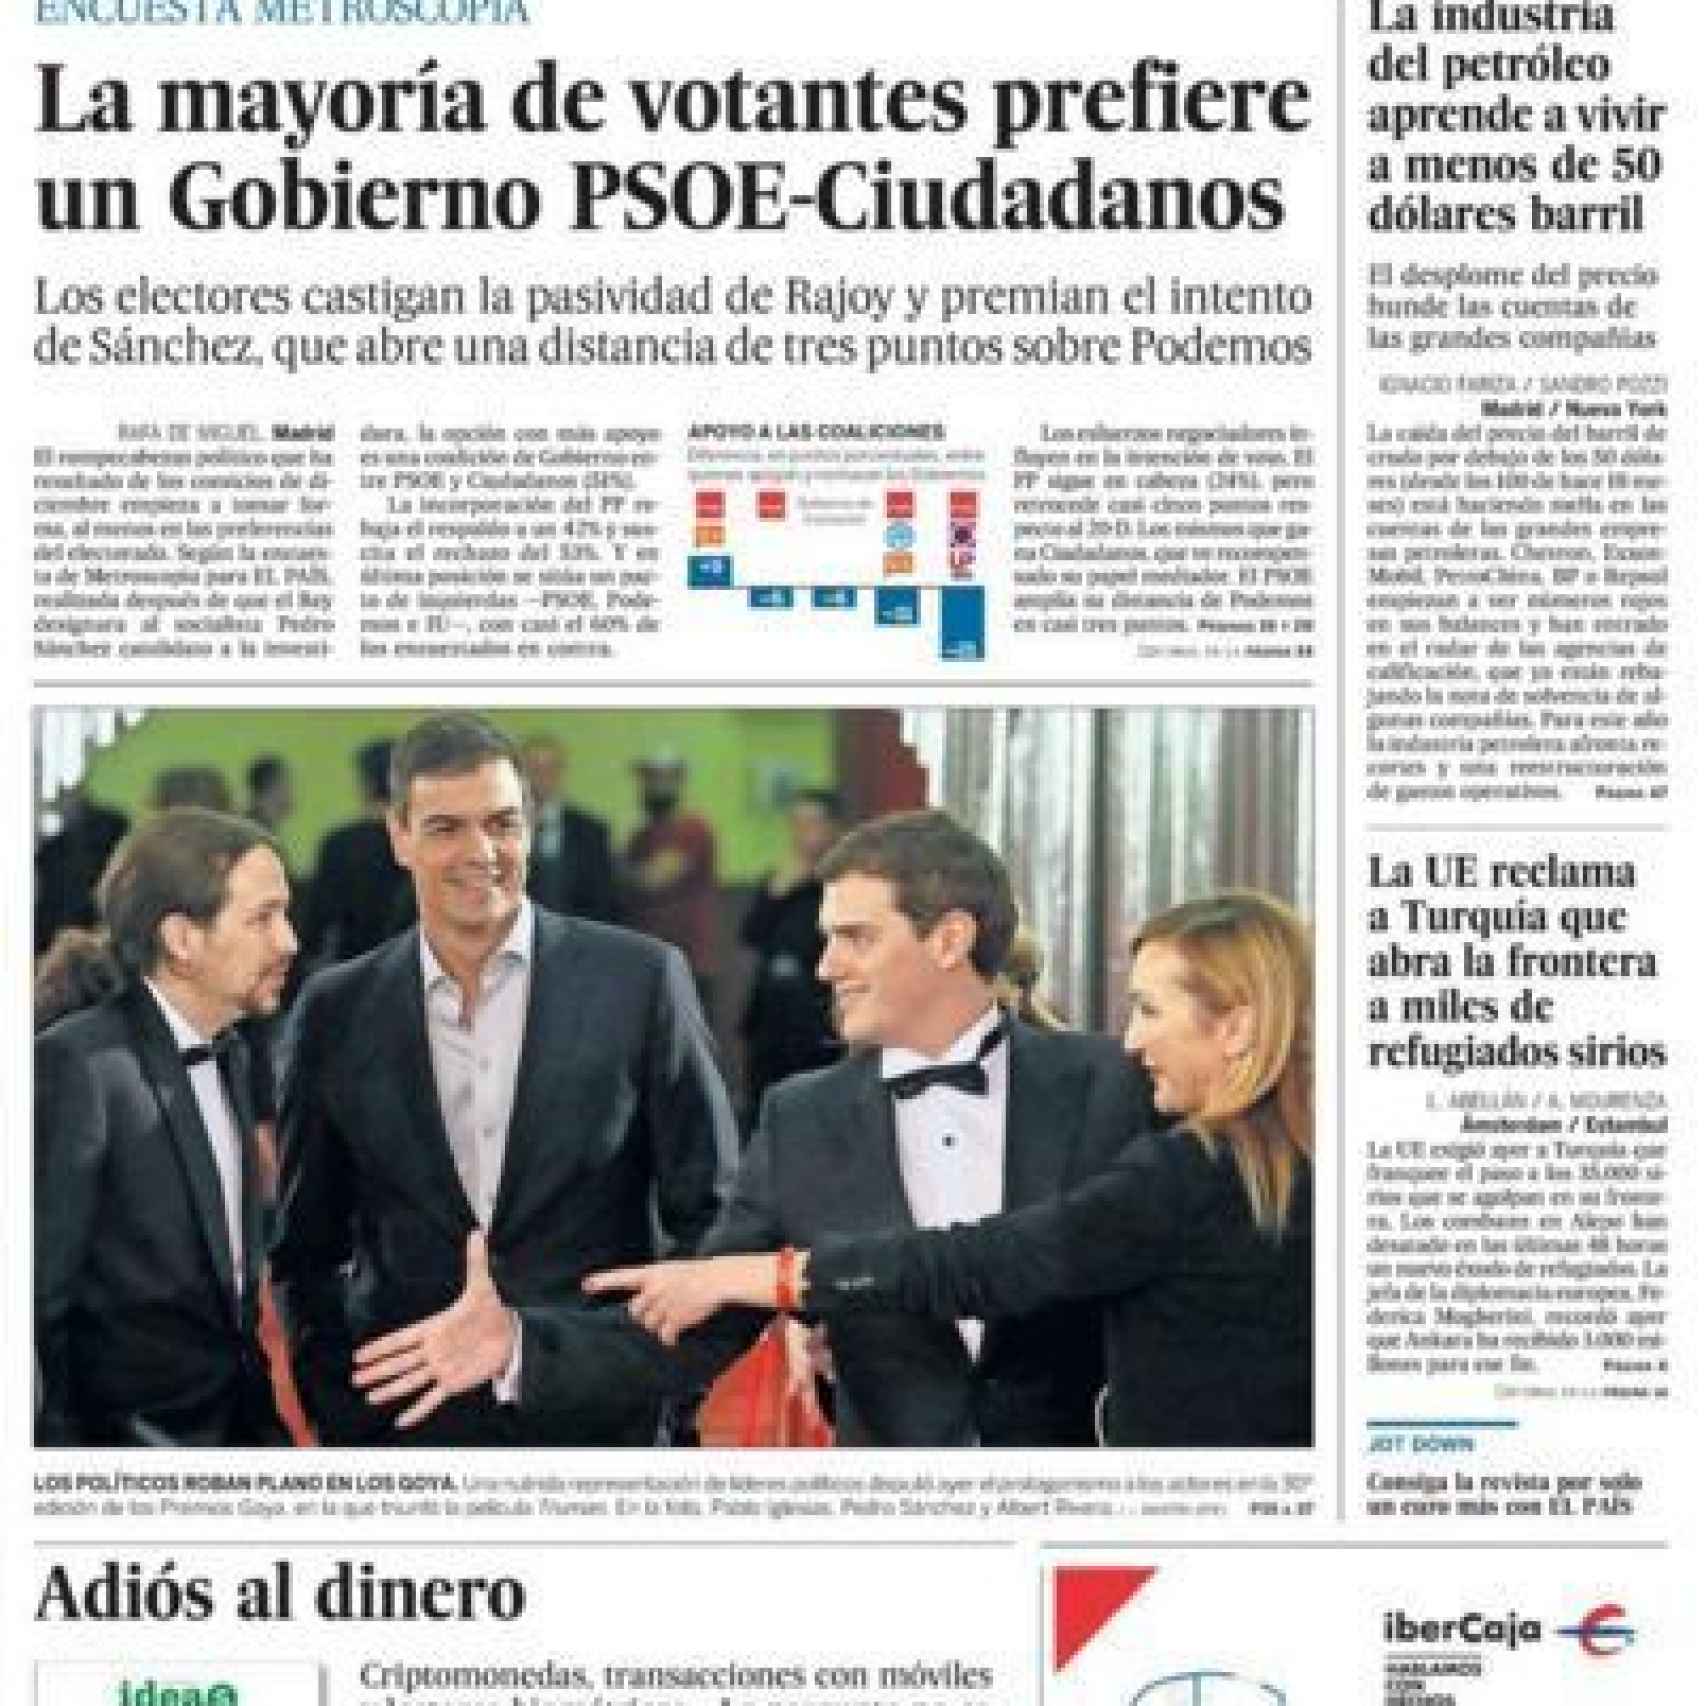 Portada de El País del 07/02/2016, tal y cómo se publicó en la medianoche del sábado.